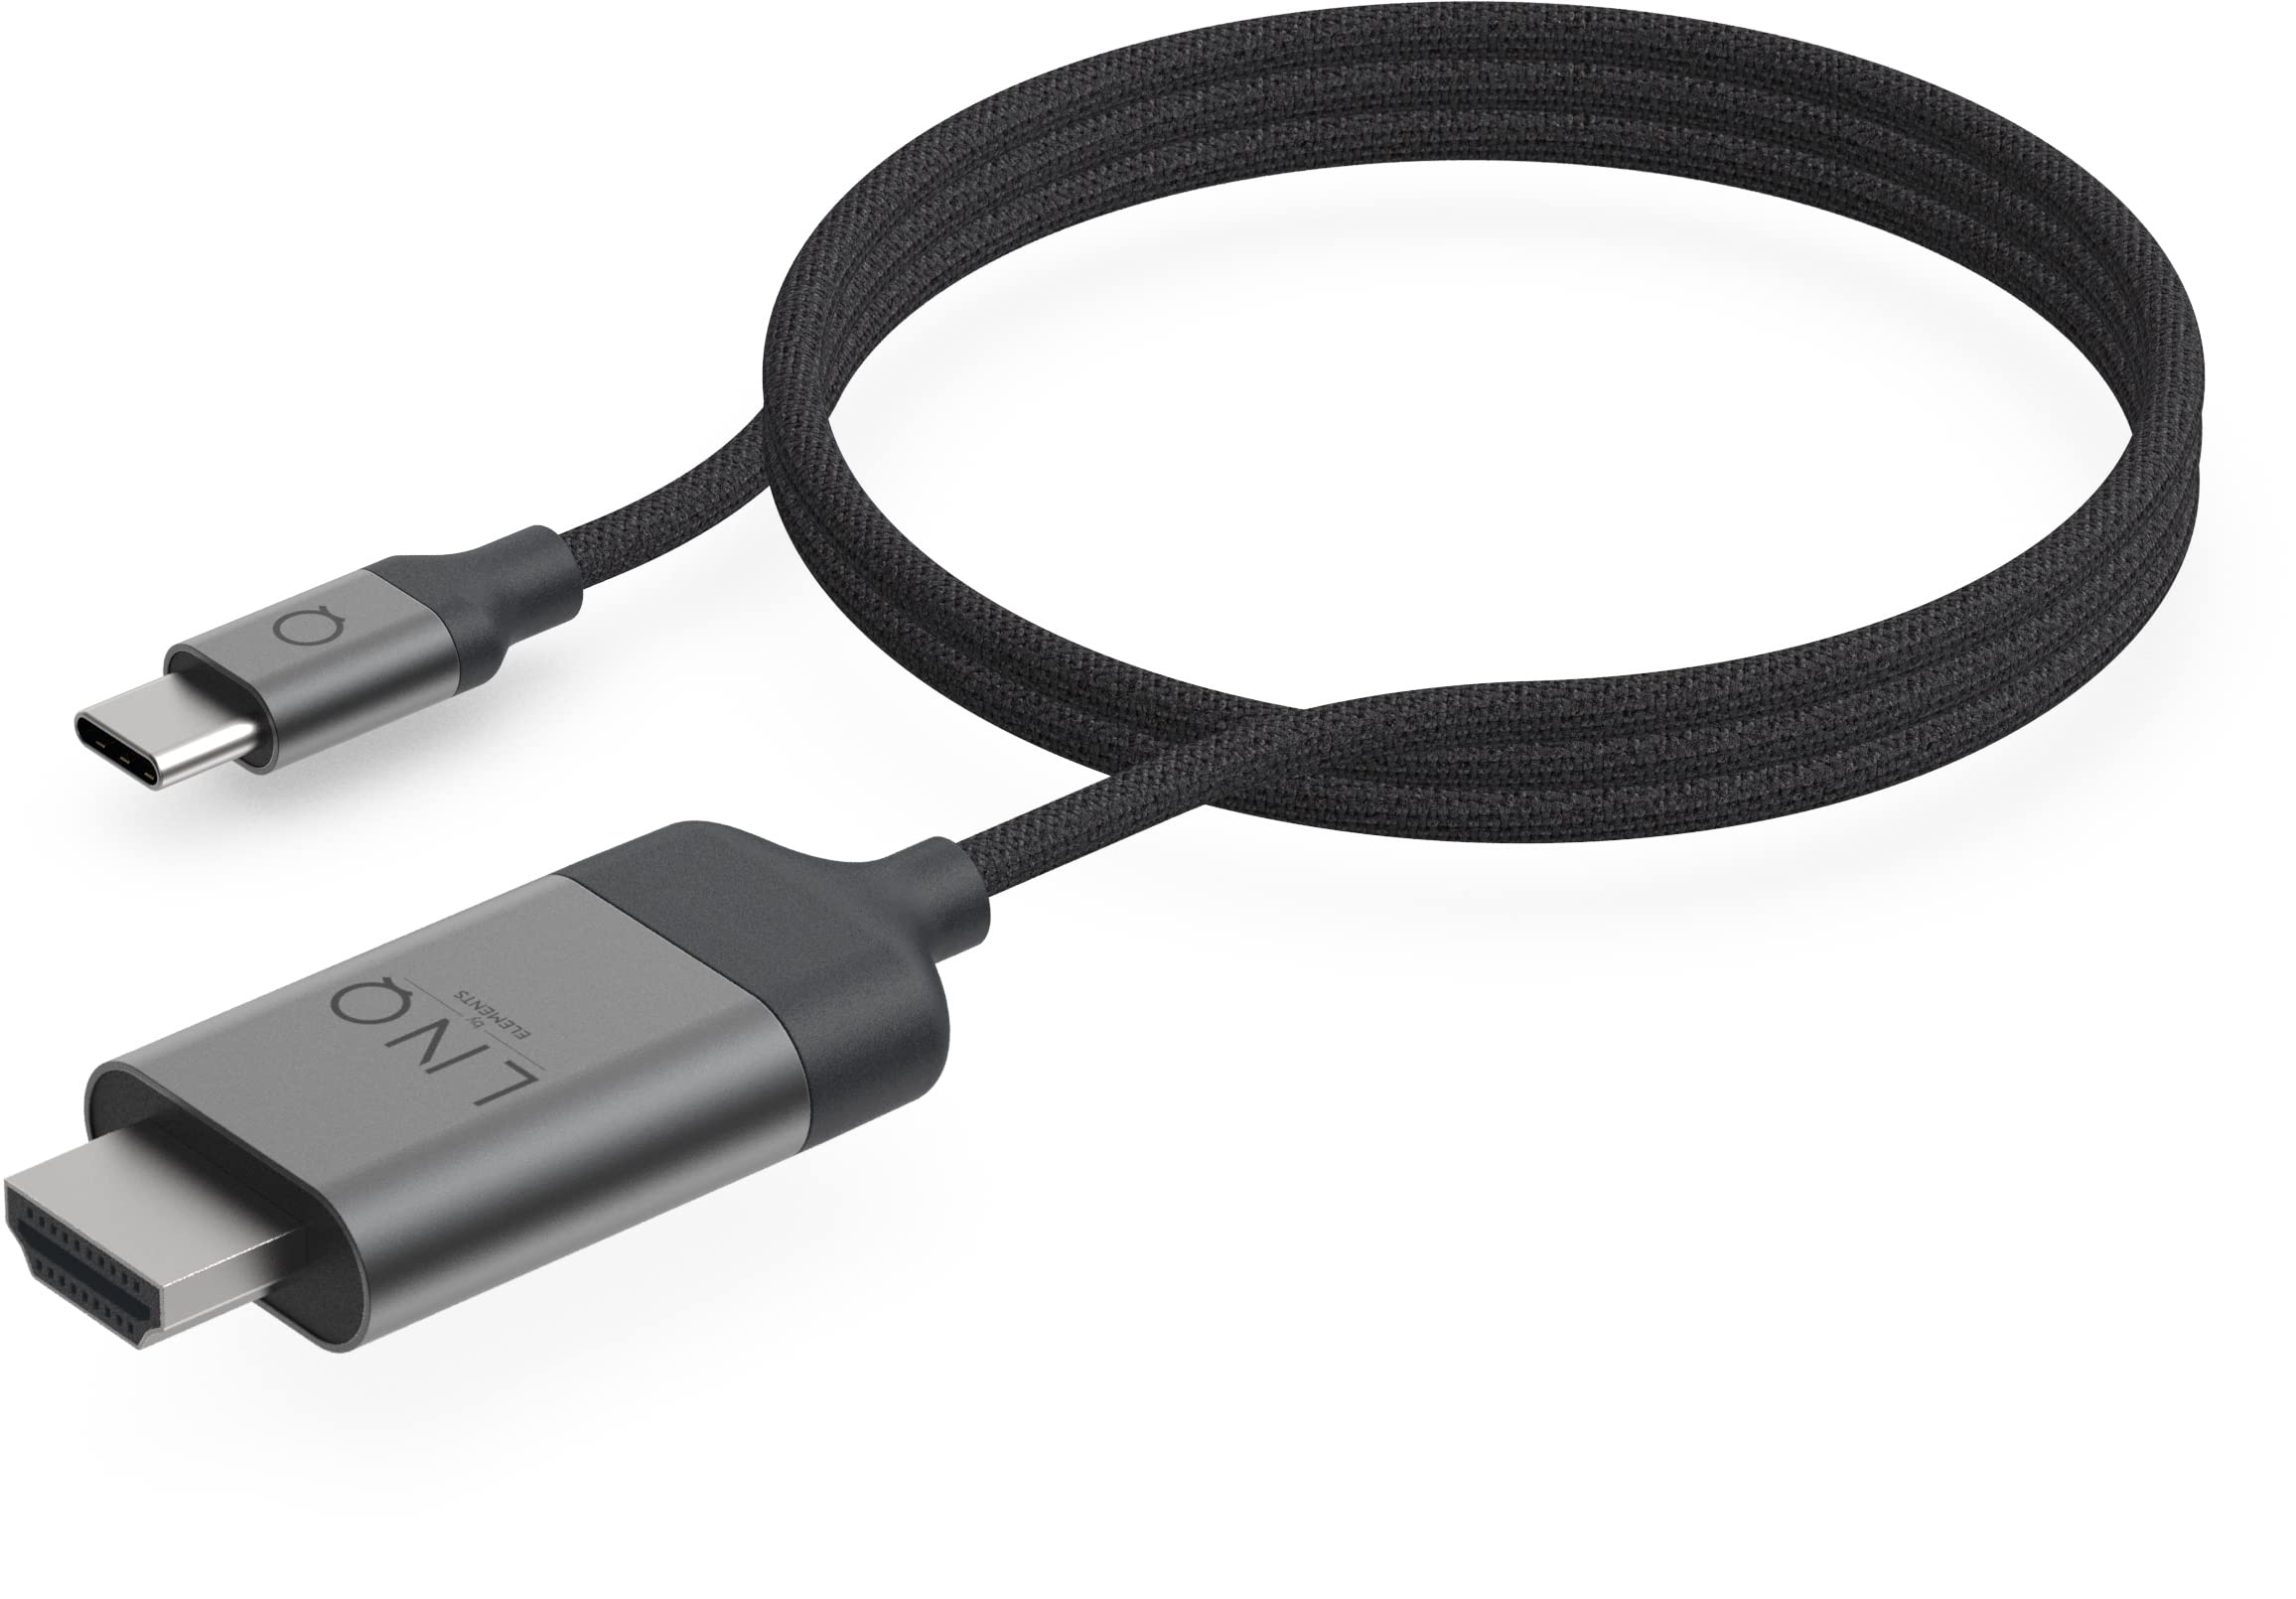 LINQ 8K/60HZ PRO CABLE USB-C